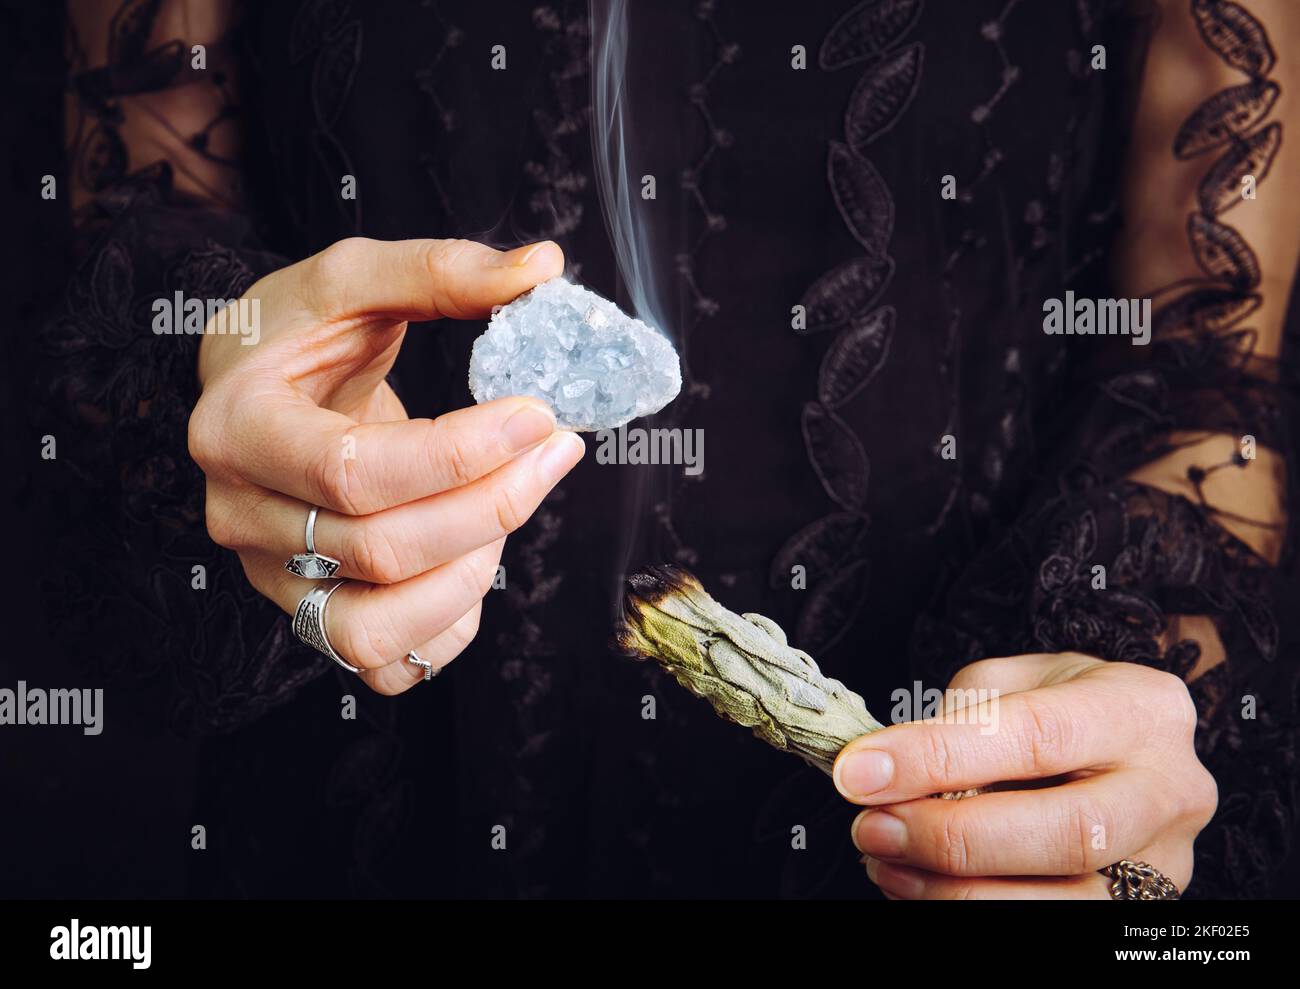 Nahaufnahme einer Frau in schwarzem Spitzenkleid, die den Edelstein eines blauen Himmelsteins aus Kristall reinigt, indem sie das weiße Salbei-Bündel verwischt. Entfernen Sie negative Energie. Stockfoto